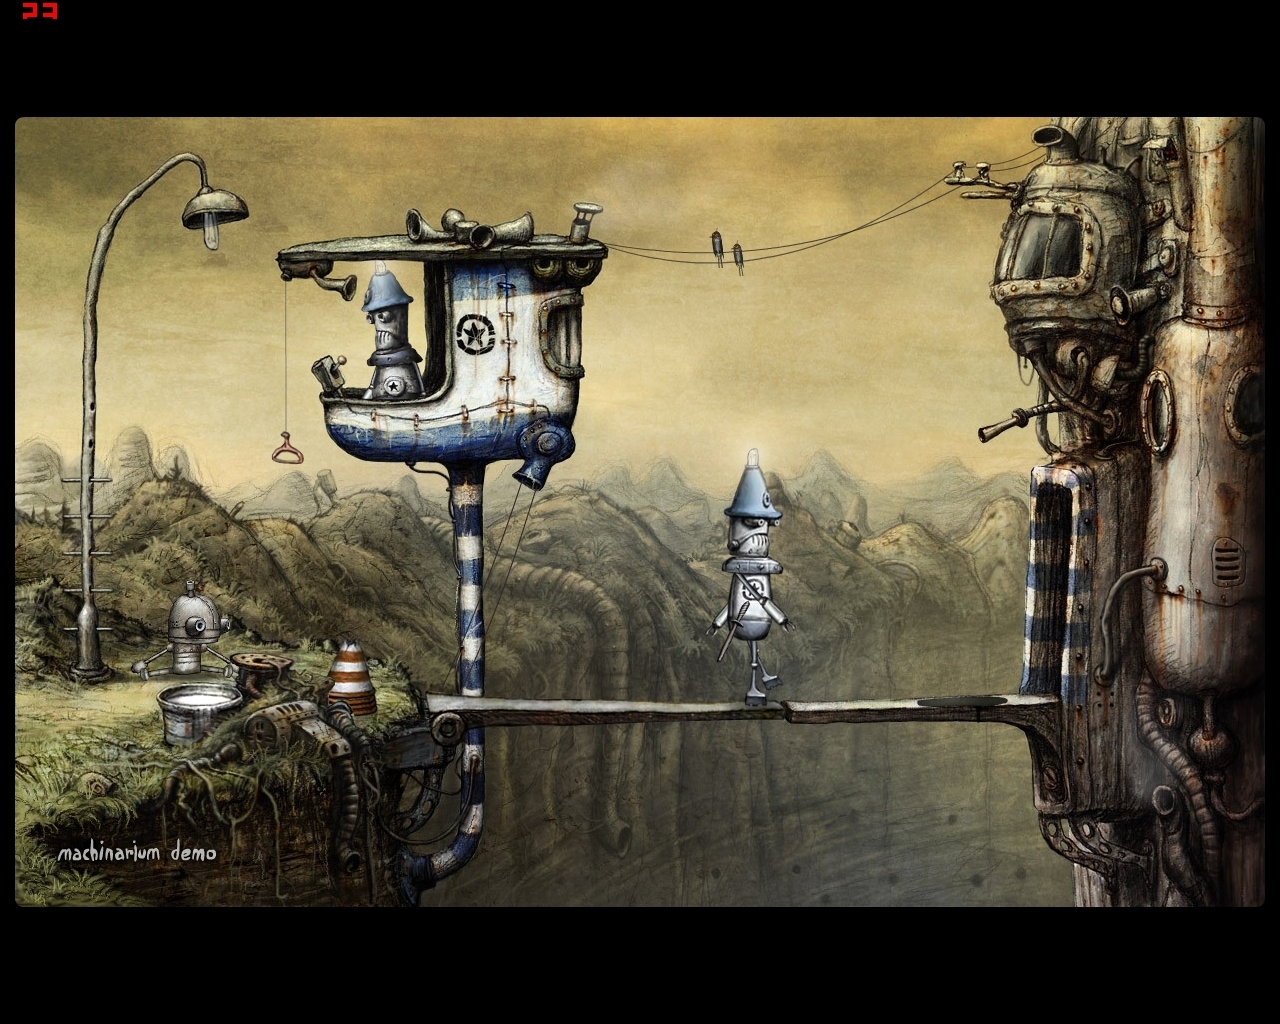 Скриншот из игры Machinarium под номером 3